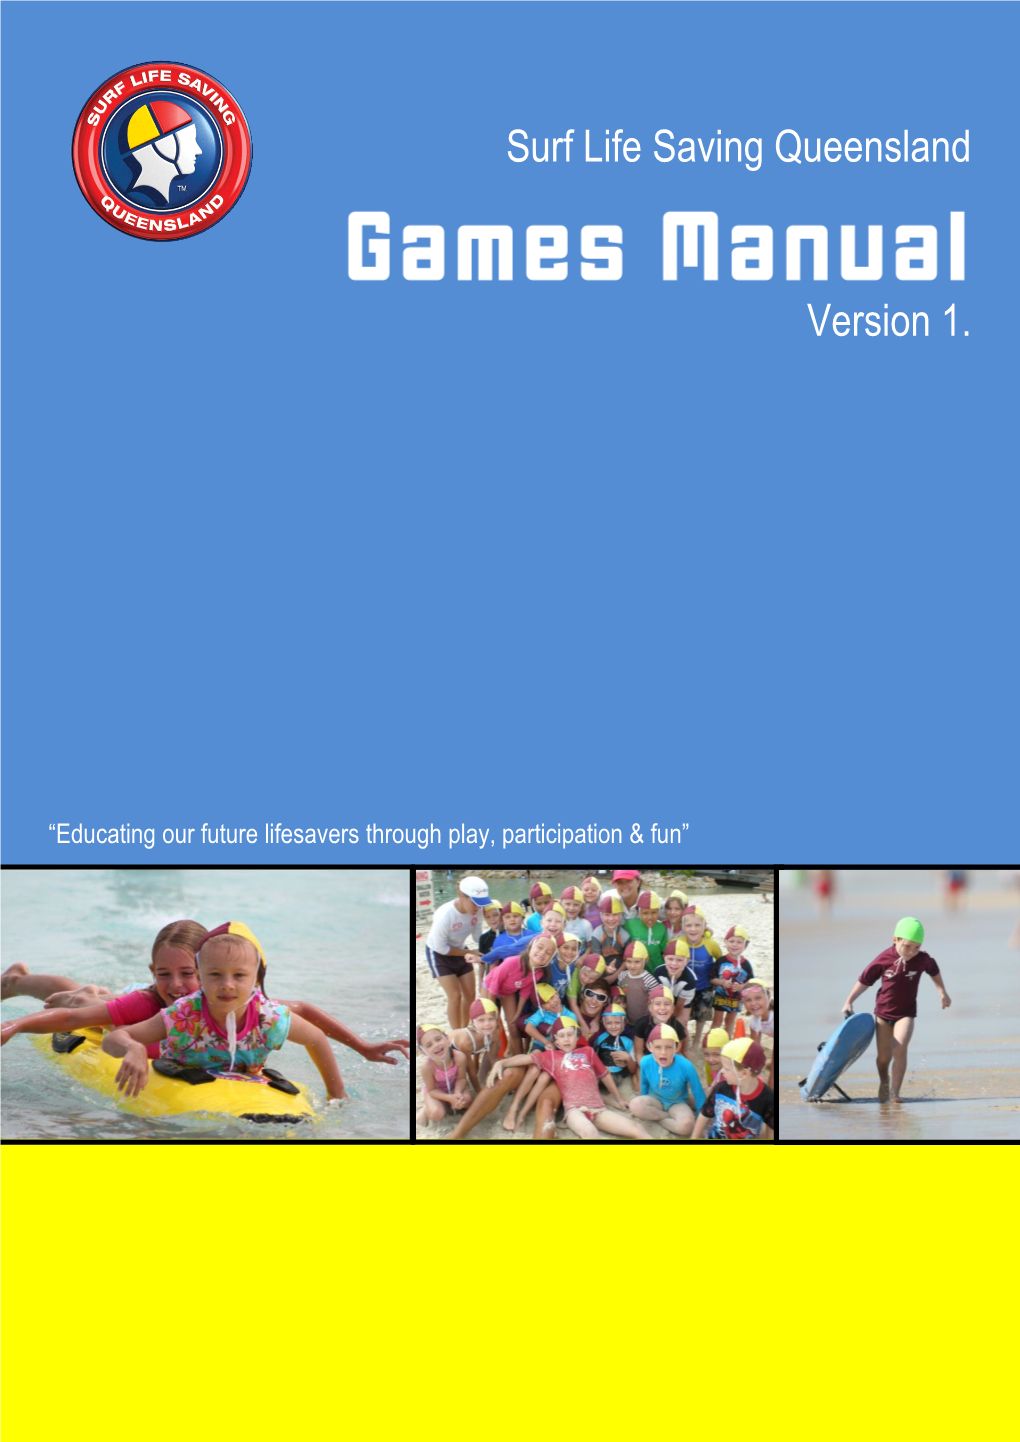 Nippers Game Manual (SLSQ)